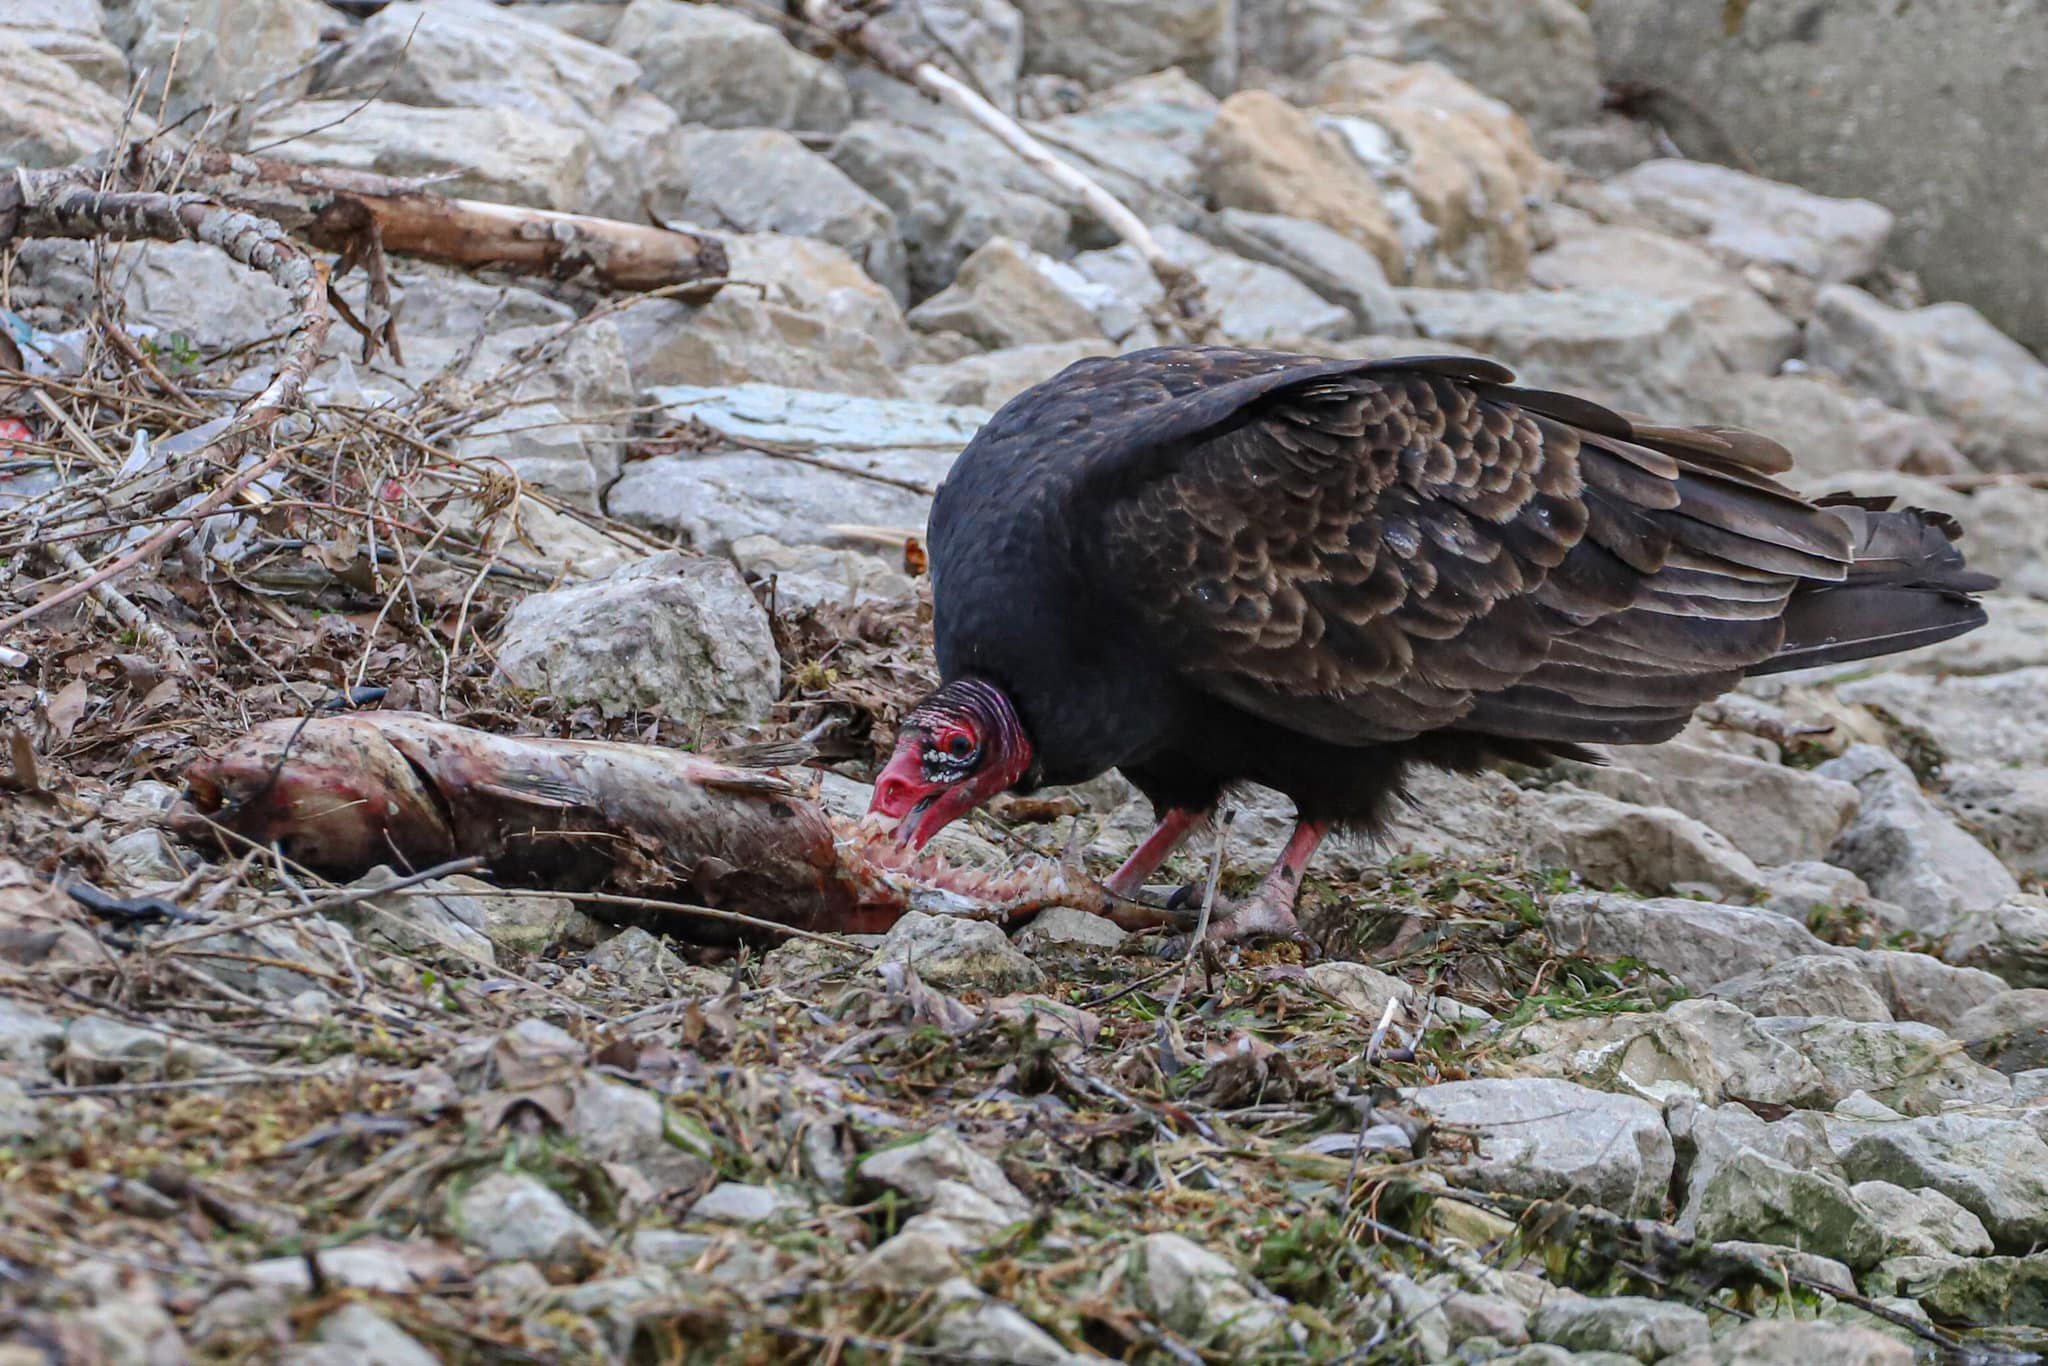 A turkey vulture eats a fish